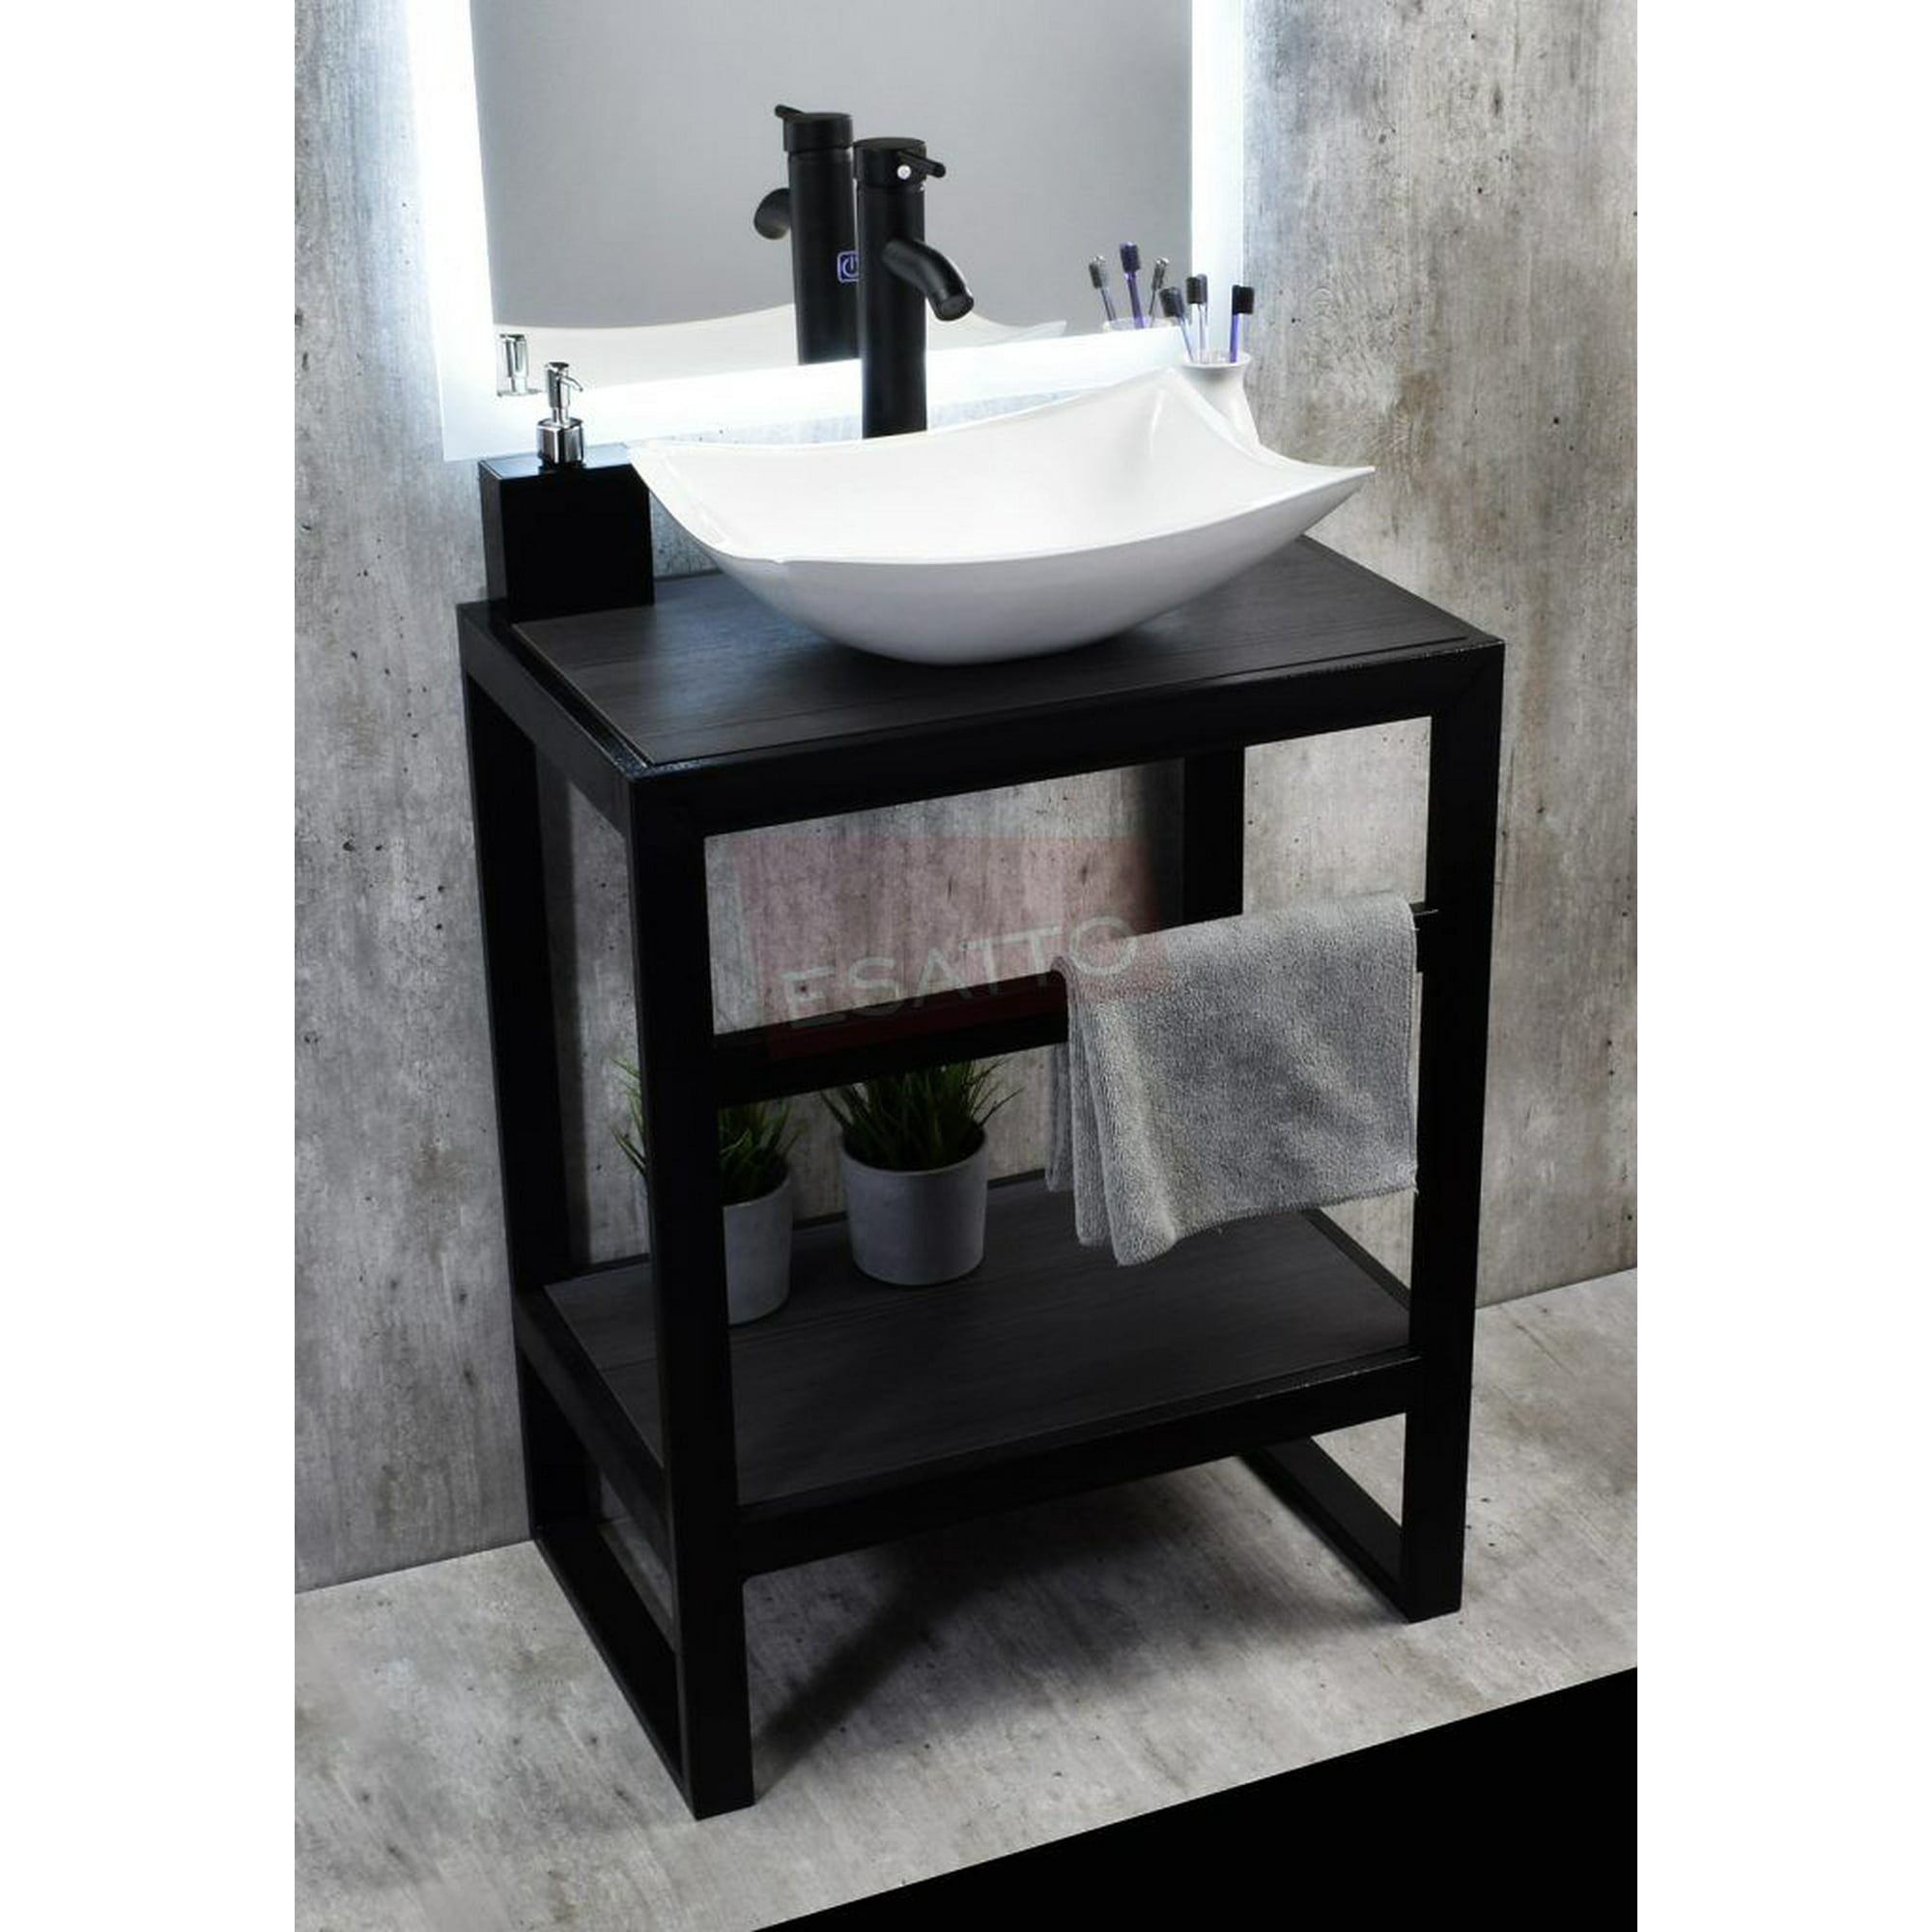 Esatto® Mueble Para Baño Negro Con Lavabo, Llave Y Desagües Tec